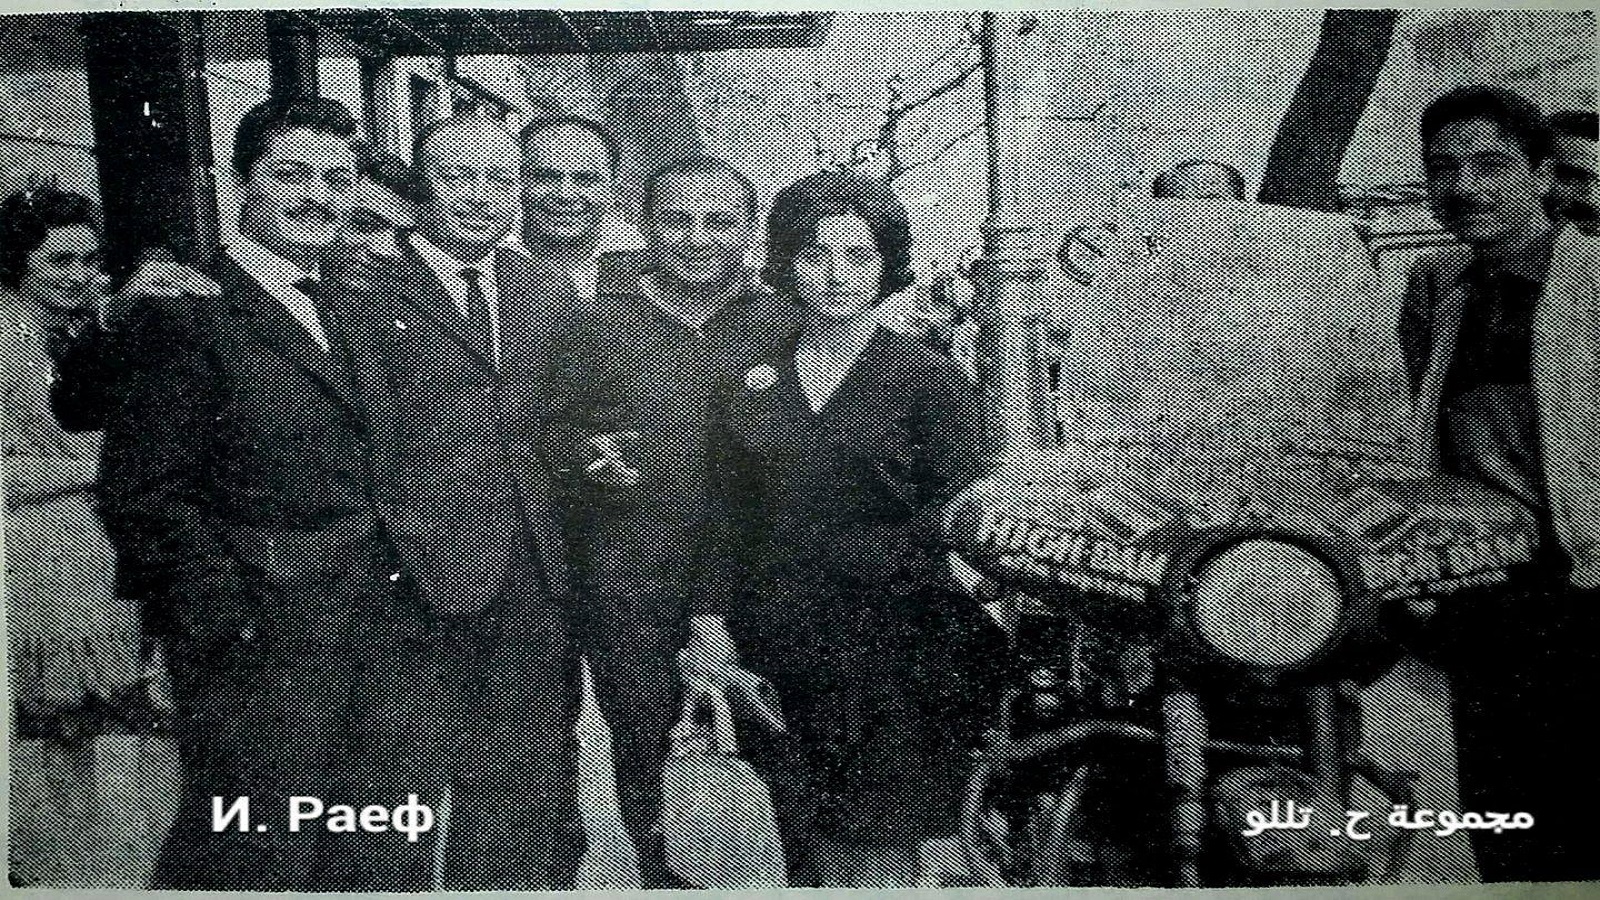 يوثق عدنان تللو لقاءه في أحد شوارع بوينس آيرس، بتاريخ 25 تشرين الأول/ أكتوبر 1961، بالسيدة فيروز وعاصي الرحباني.